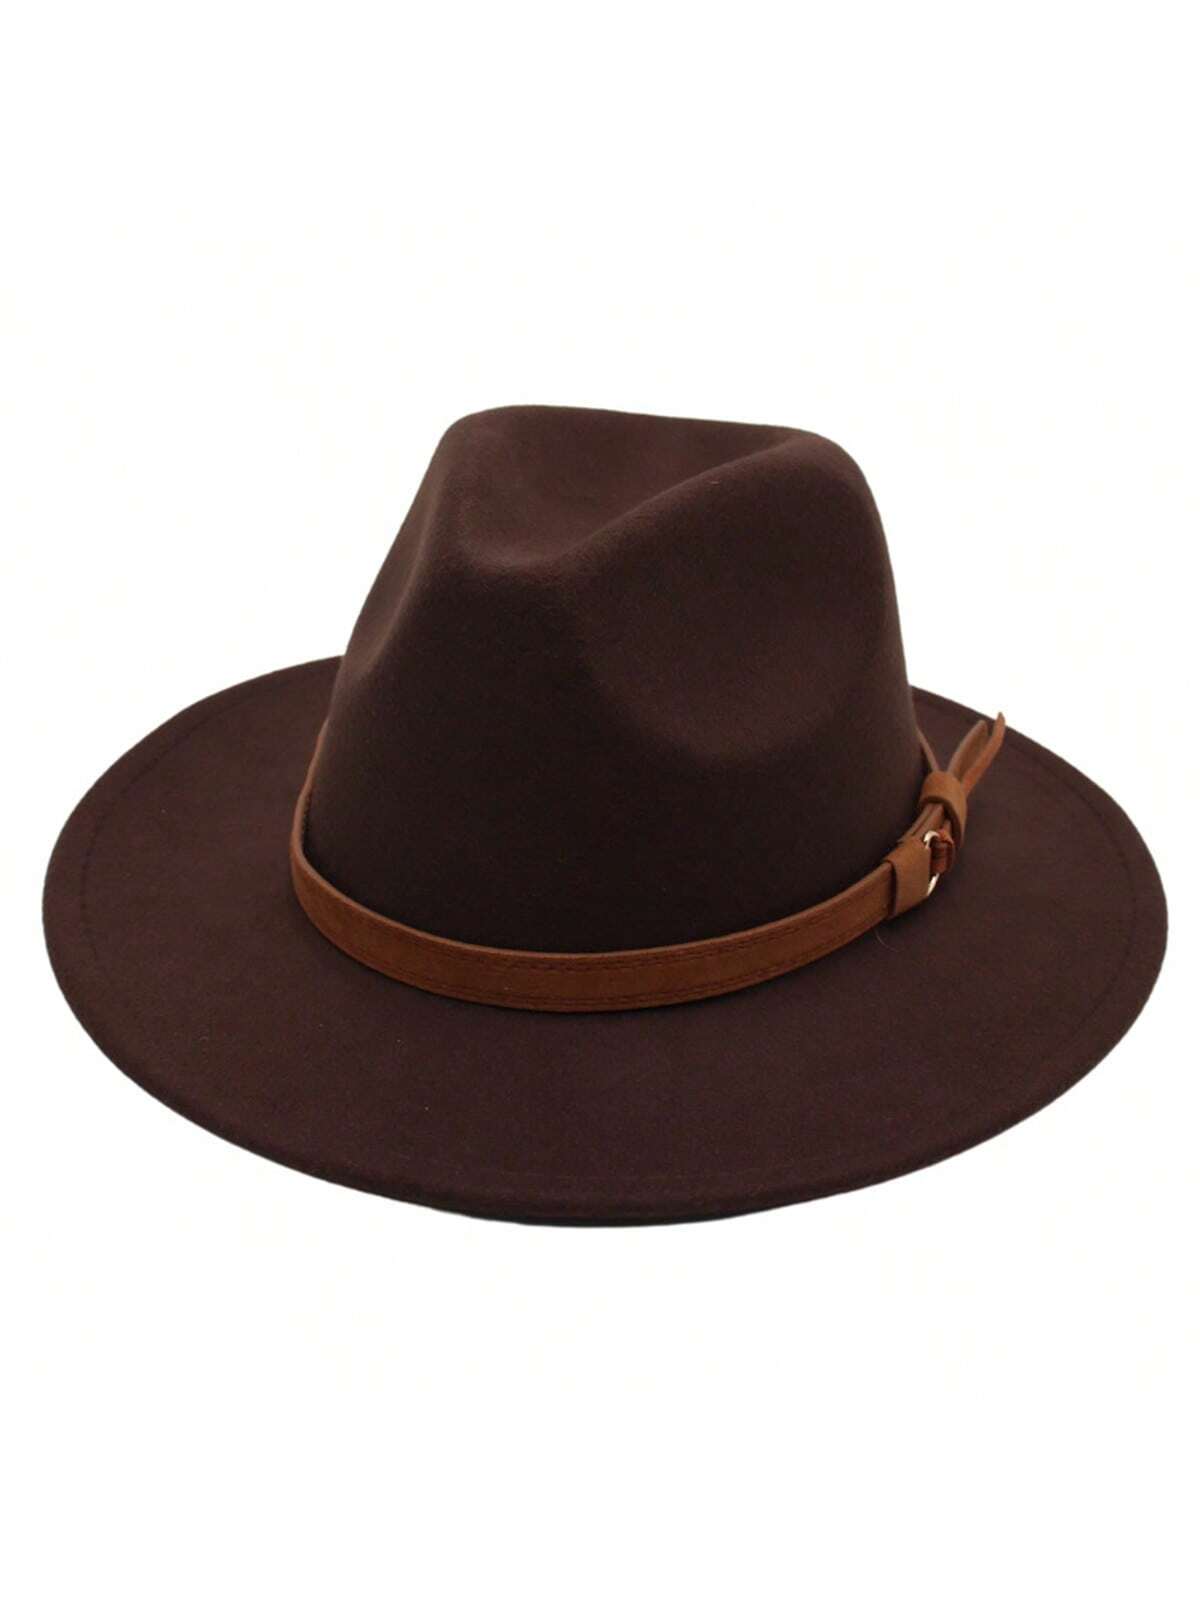 1 шт. черная шляпа Fedora в британском стиле с пряжкой ремня, кофейный коричневый